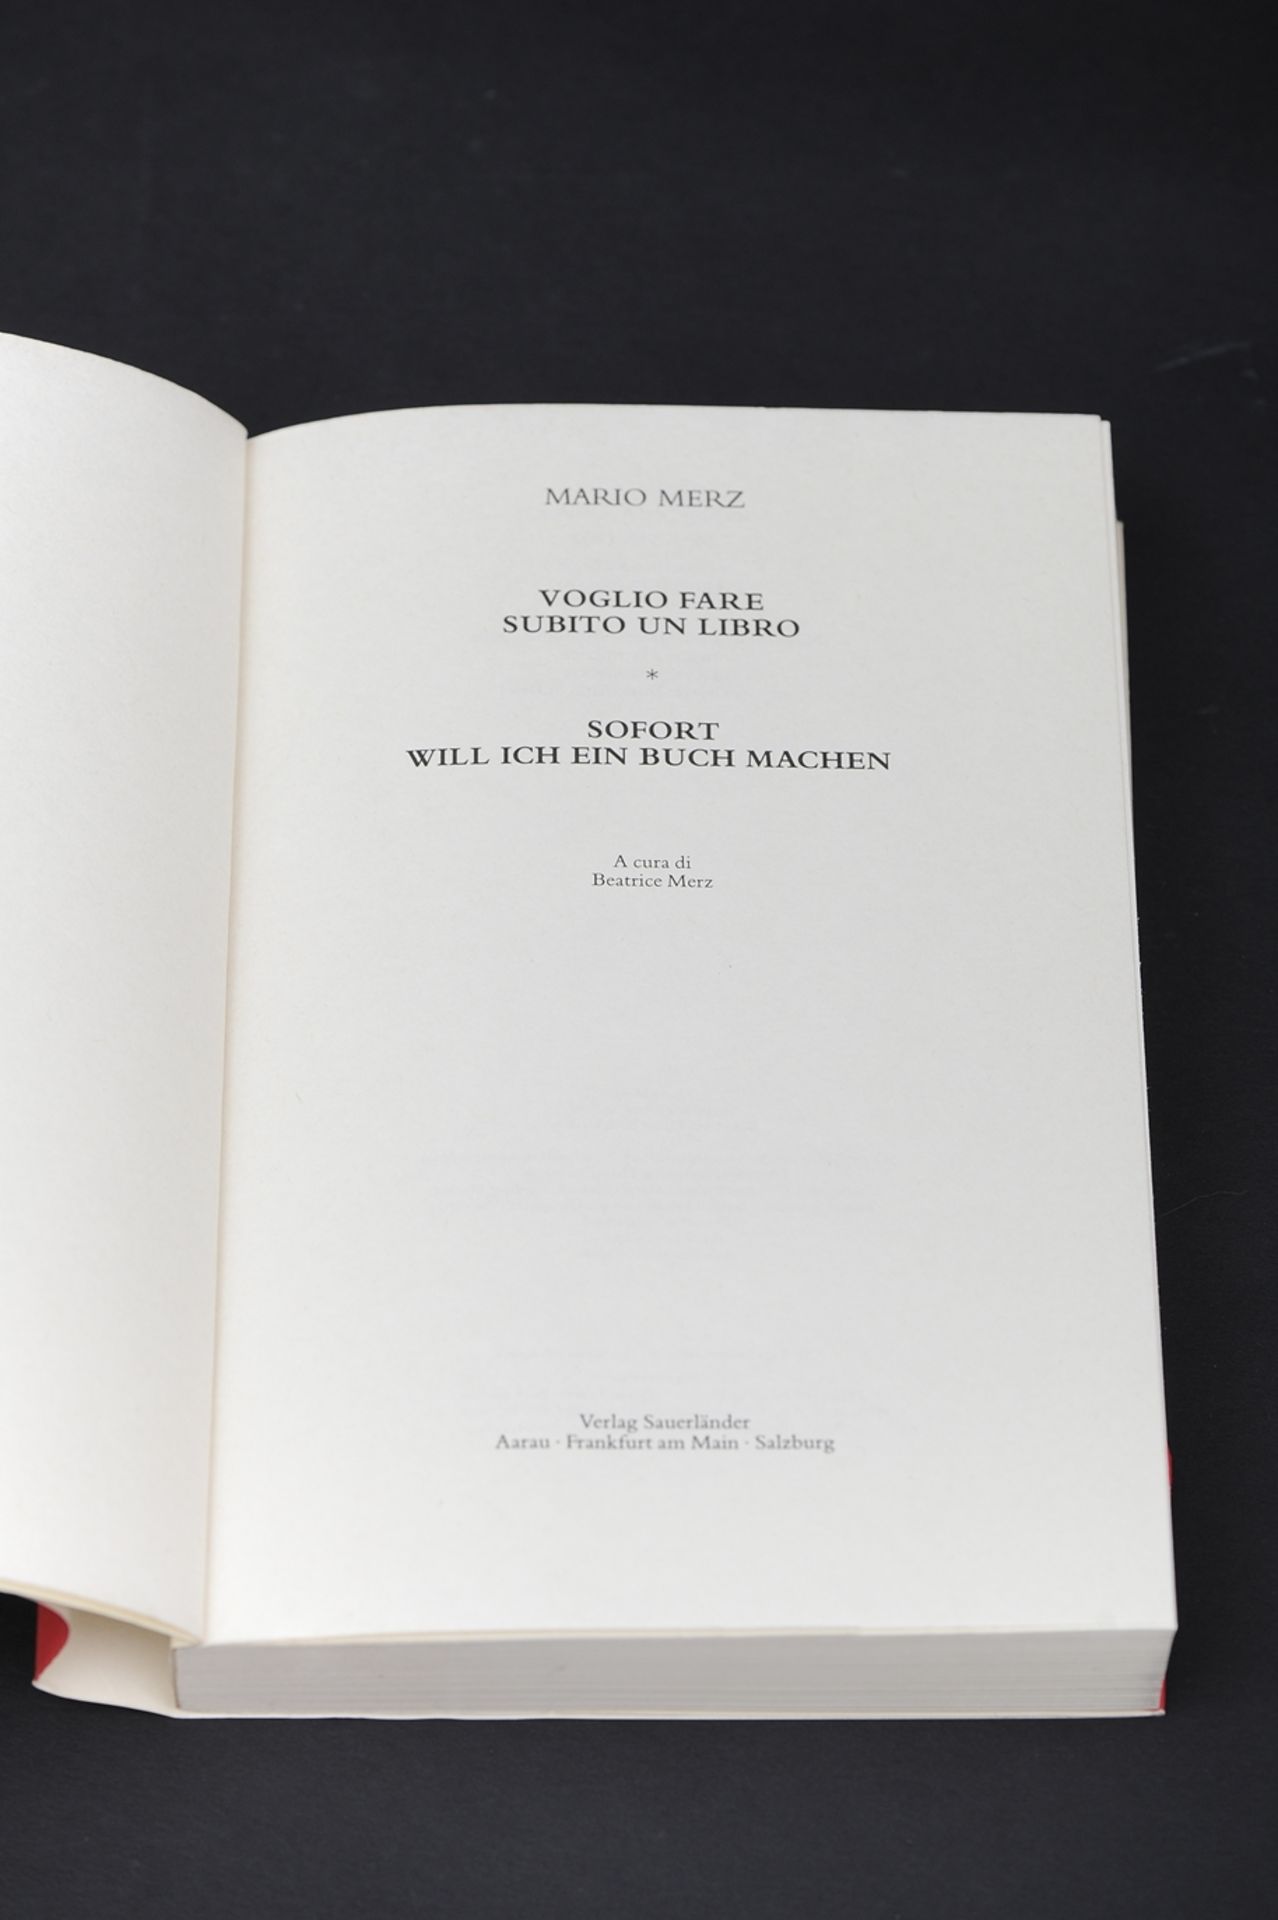 "Voglio fare subito un libro" - vom Künstler handsigniertes Exemplar. Aus der Sammlung Dr. Wilhelm - Image 3 of 3